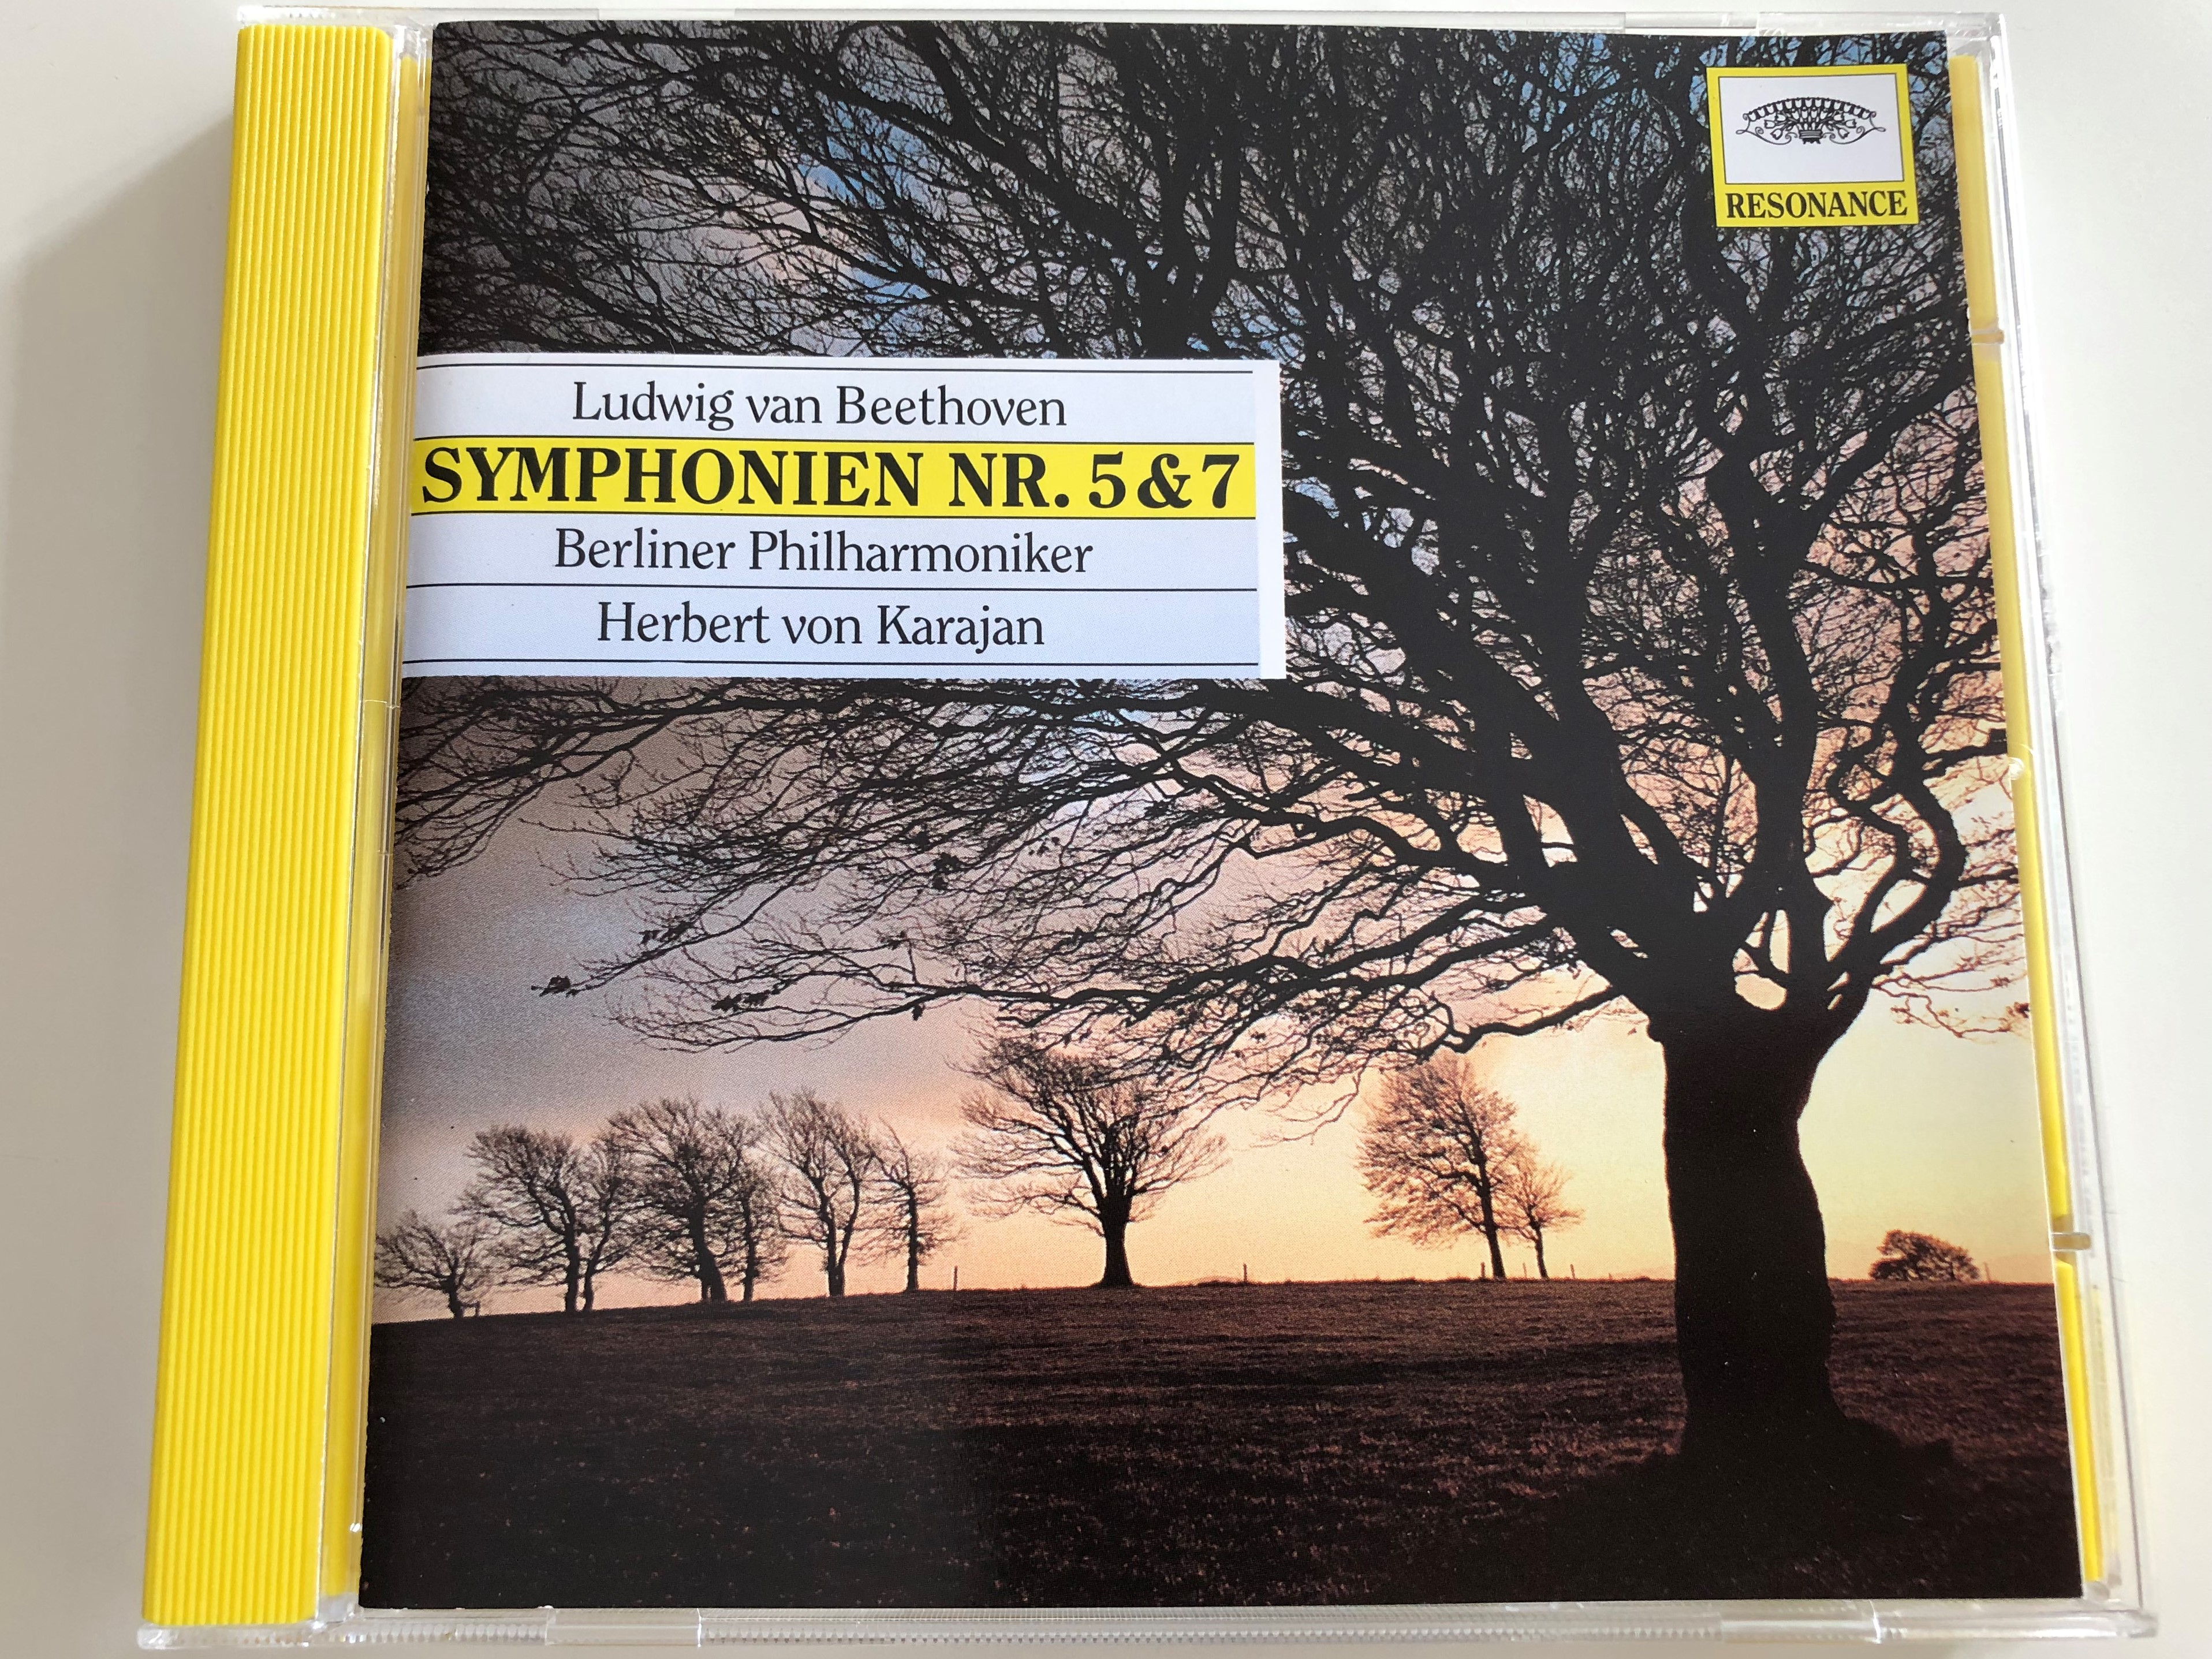 ludwig-van-beethoven-symphonien-nr.-5-7-berliner-philharmoniker-conducted-by-herbert-von-karajan-audio-cd-resonance-445-005-2-1-.jpg